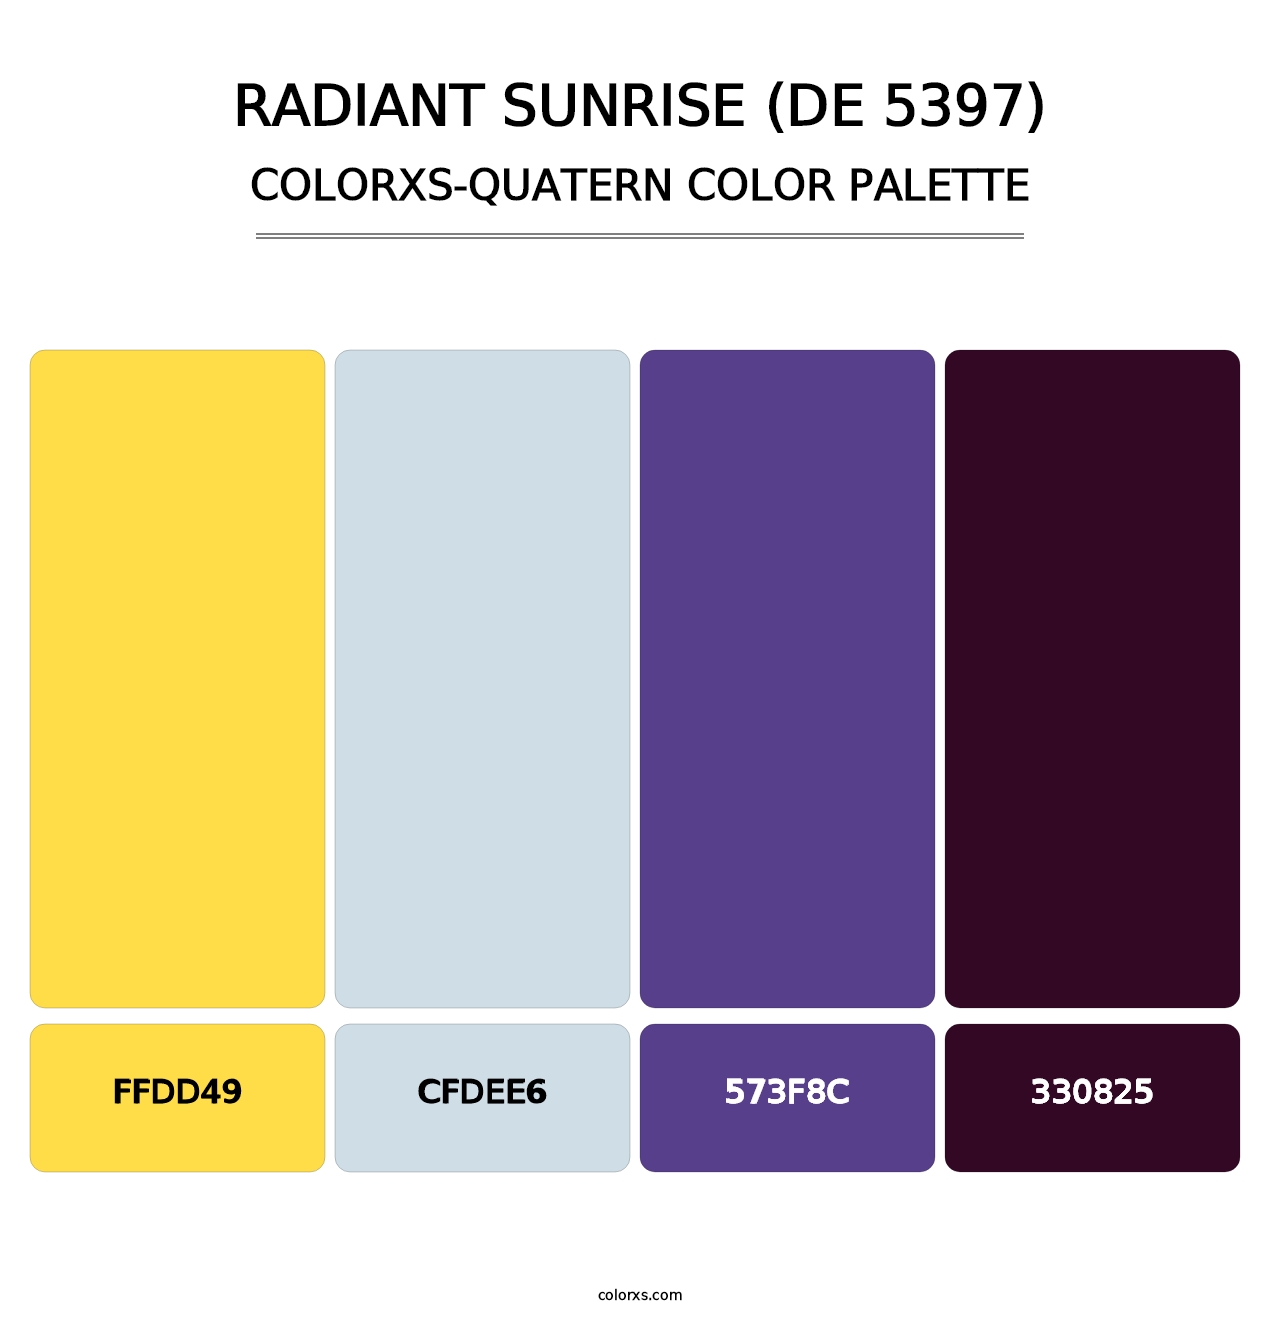 Radiant Sunrise (DE 5397) - Colorxs Quatern Palette